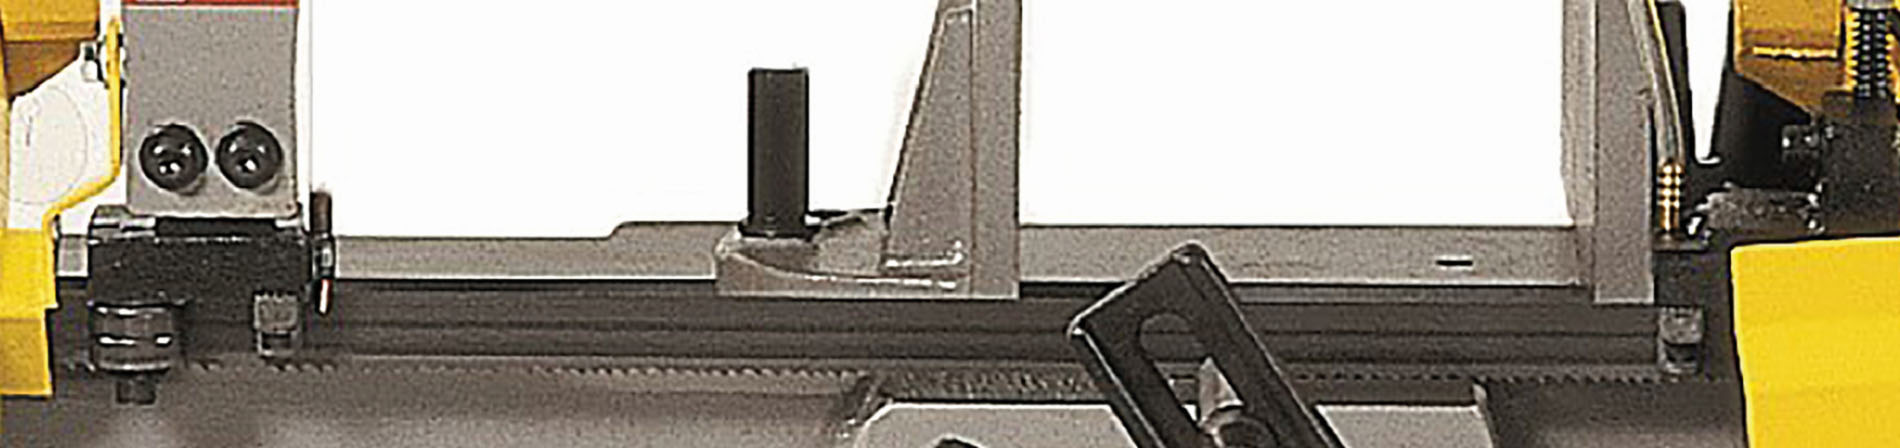 Sägeband 3.035 x 27 x 0,9 mm 5-8 ZpZ Bi-Metall 